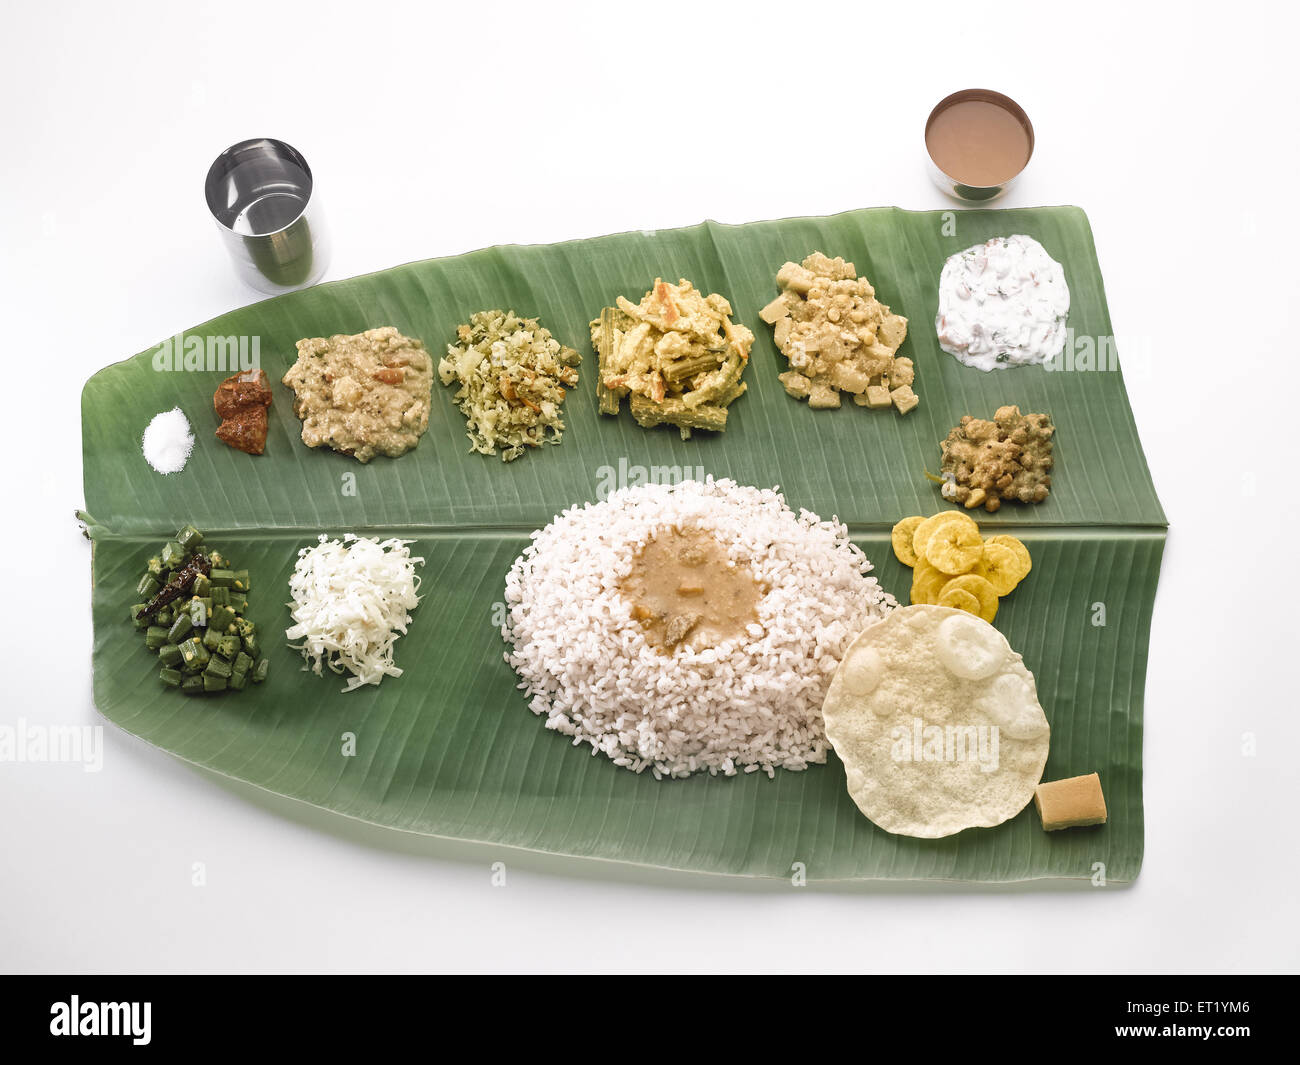 South Indian le déjeuner servi sur des feuilles de banane verte Banque D'Images